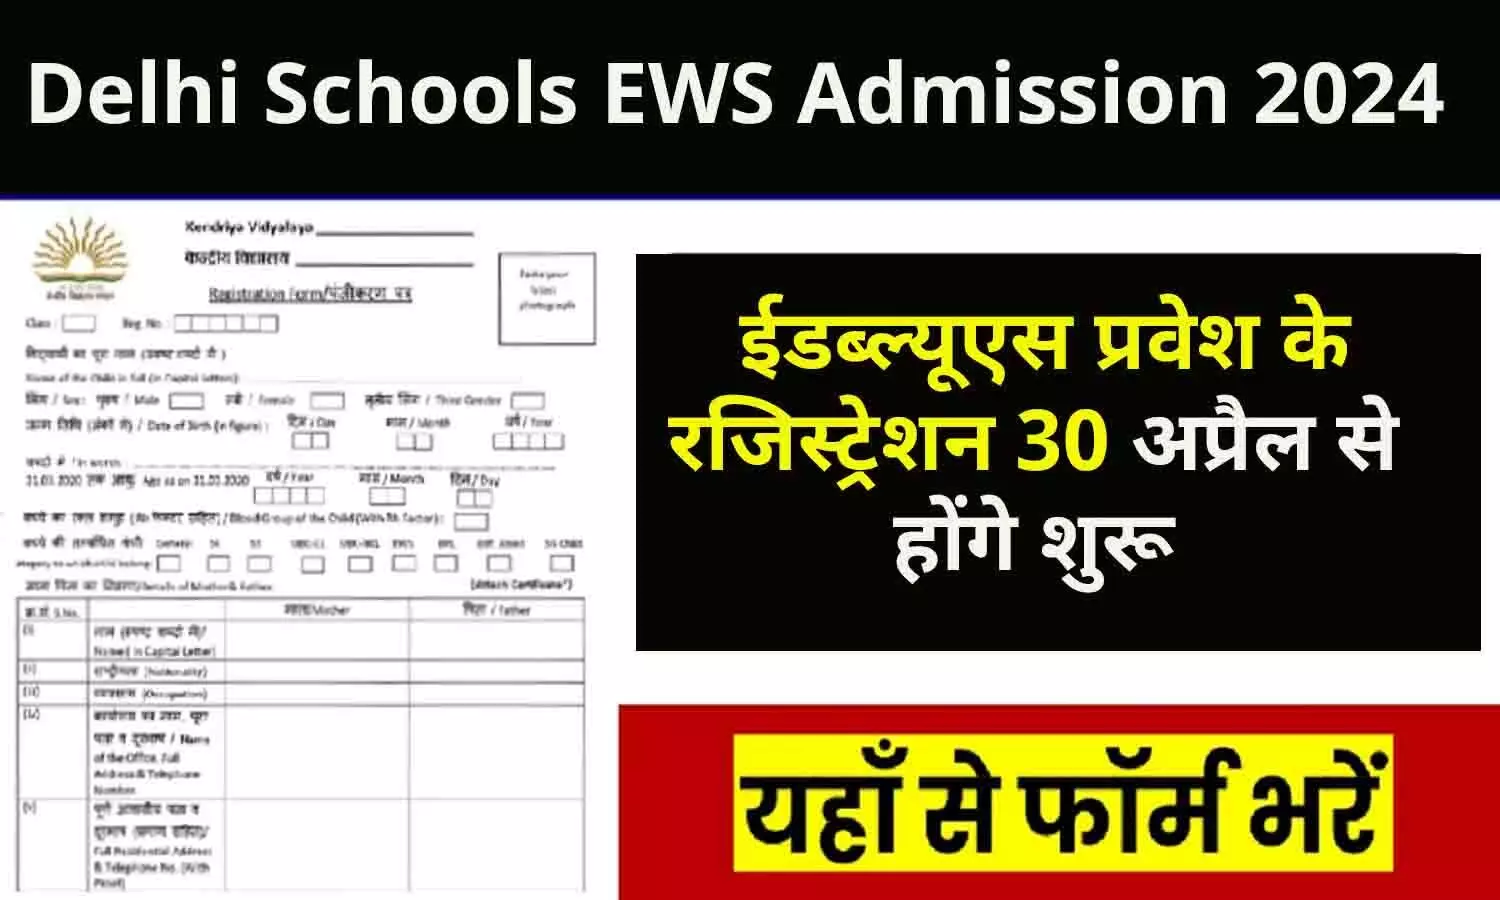 Delhi Schools EWS Admission 2024: ईडब्ल्यूएस प्रवेश के रजिस्ट्रेशन 30 अप्रैल से शुरू, फटाफट ऑनलाइन करें आवेदन...